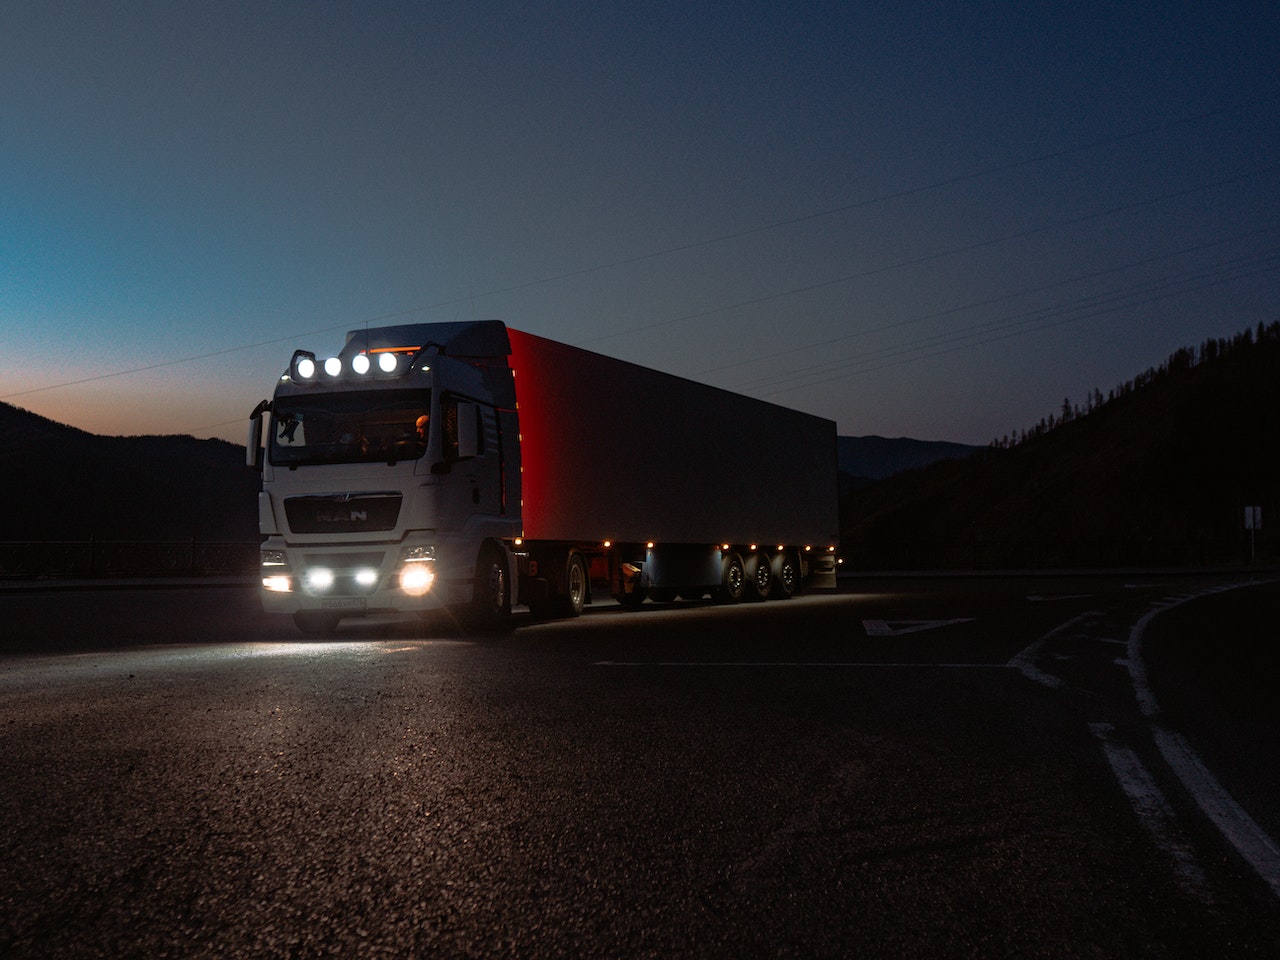 Proiectoare pentru camioane - Iluminand drumul in conditii extreme: O analiza a beneficiilor proiectoarelor pentru camioane in diverse situatii